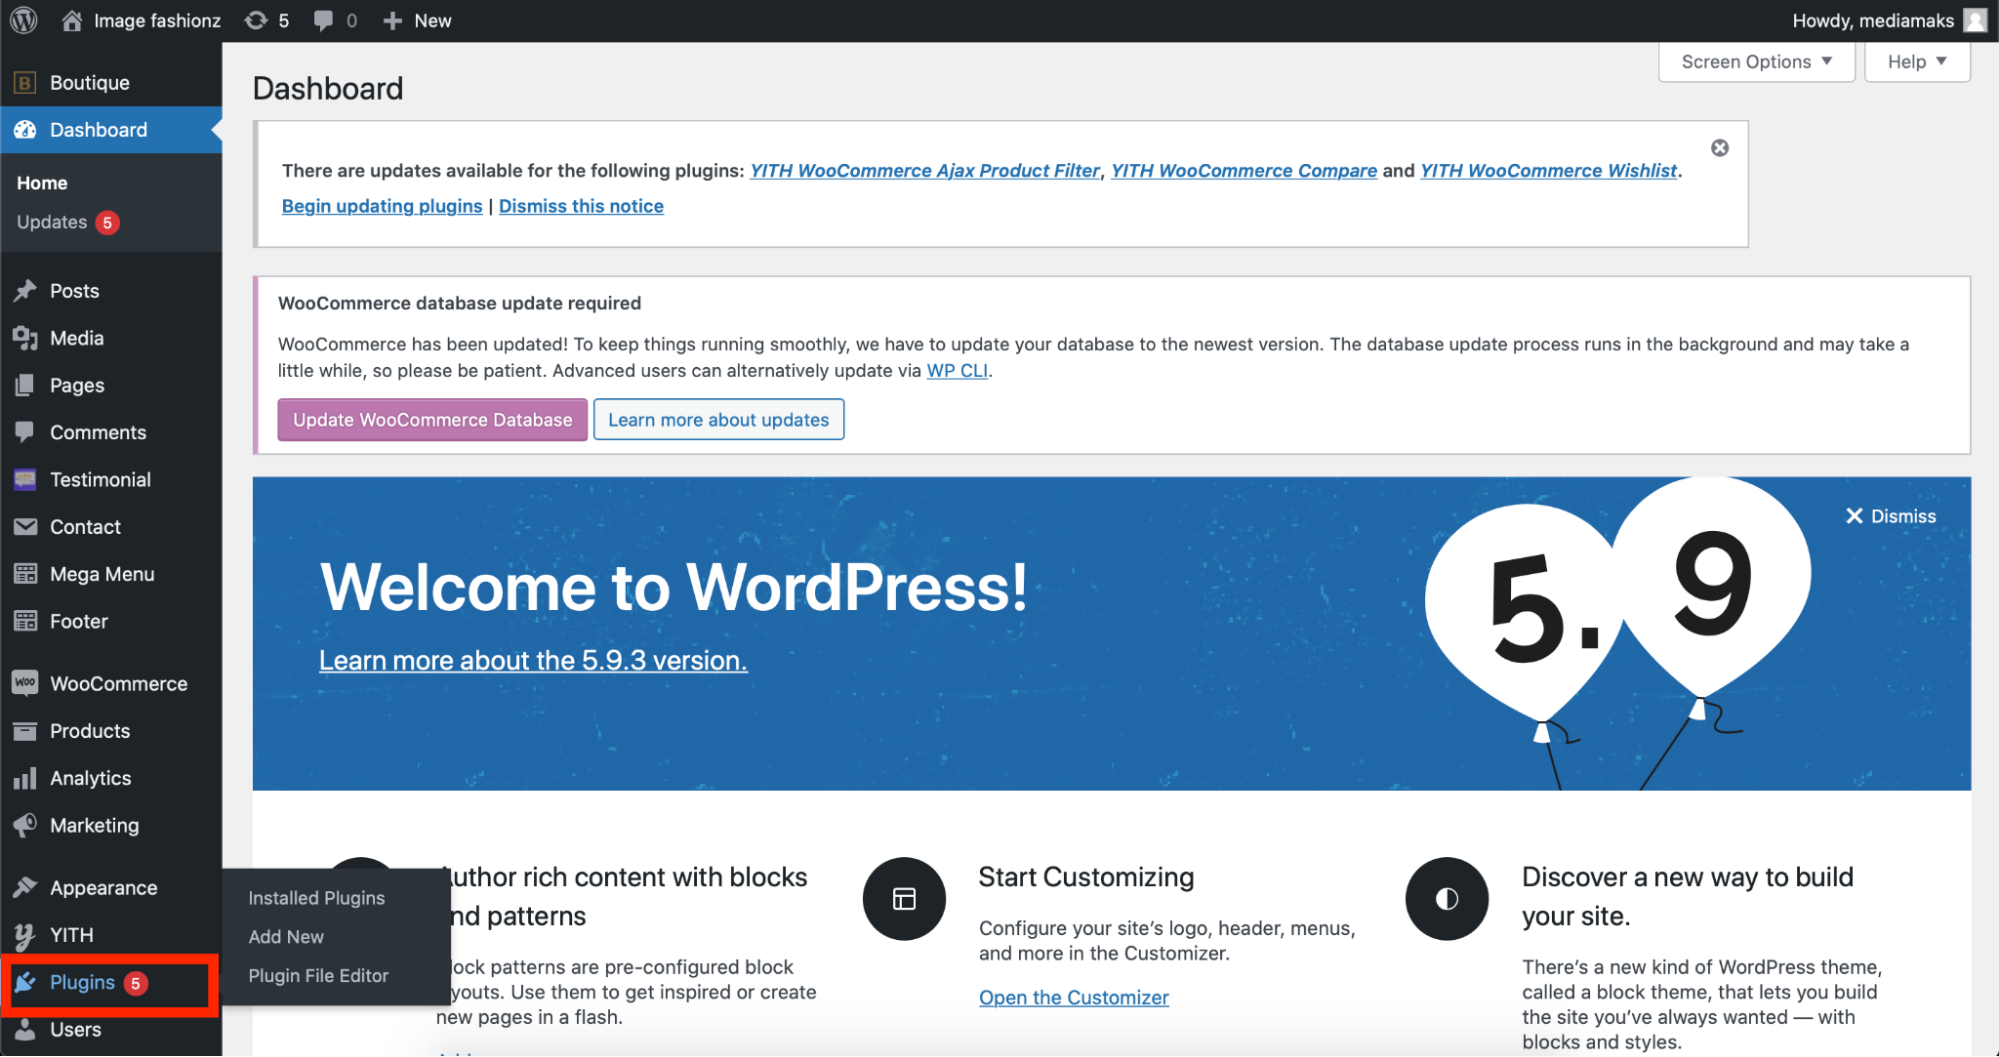 The Plugin tab on the WordPress dashboard